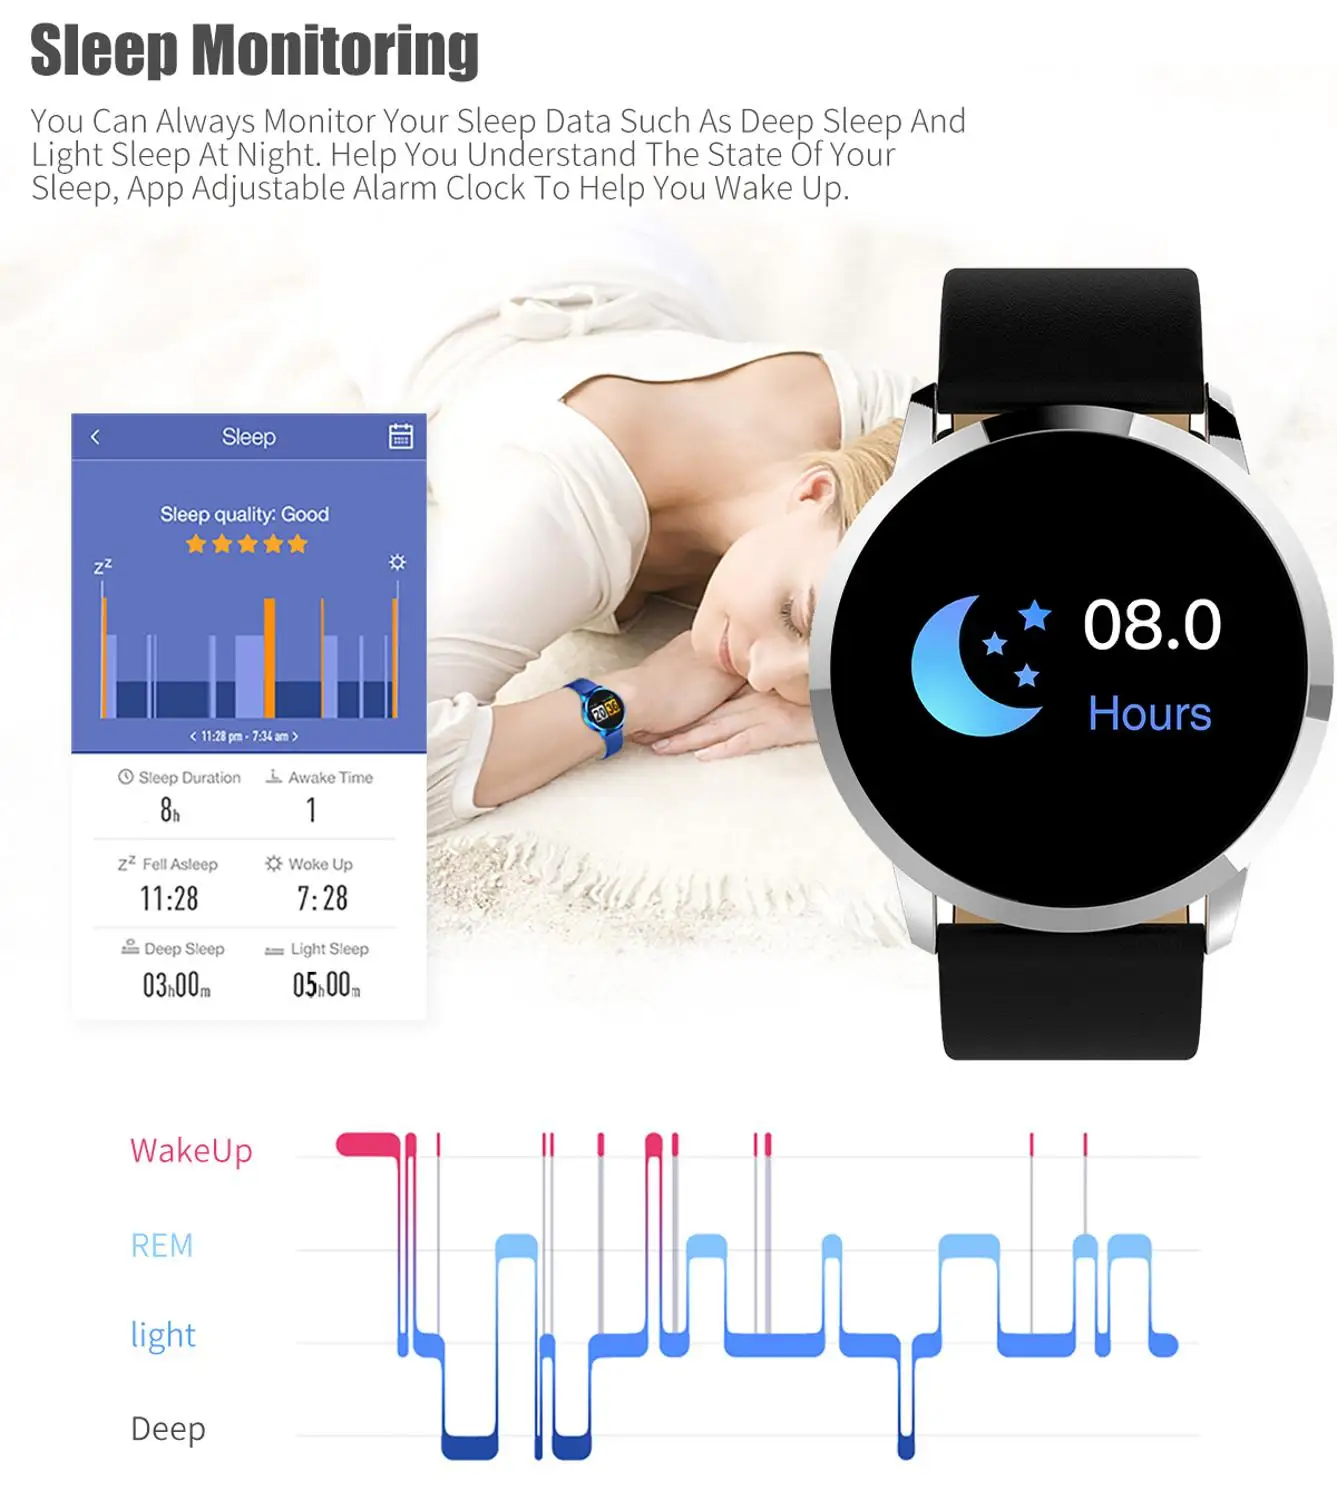 Nové Smartwatch Bluetooth Smart Hodinky Q8 Pre IPhone IOS Android Smart Telefónu Nosenie Hodiny Nositeľné Zariadenie Smartwach PK GT08 DZ09 P68